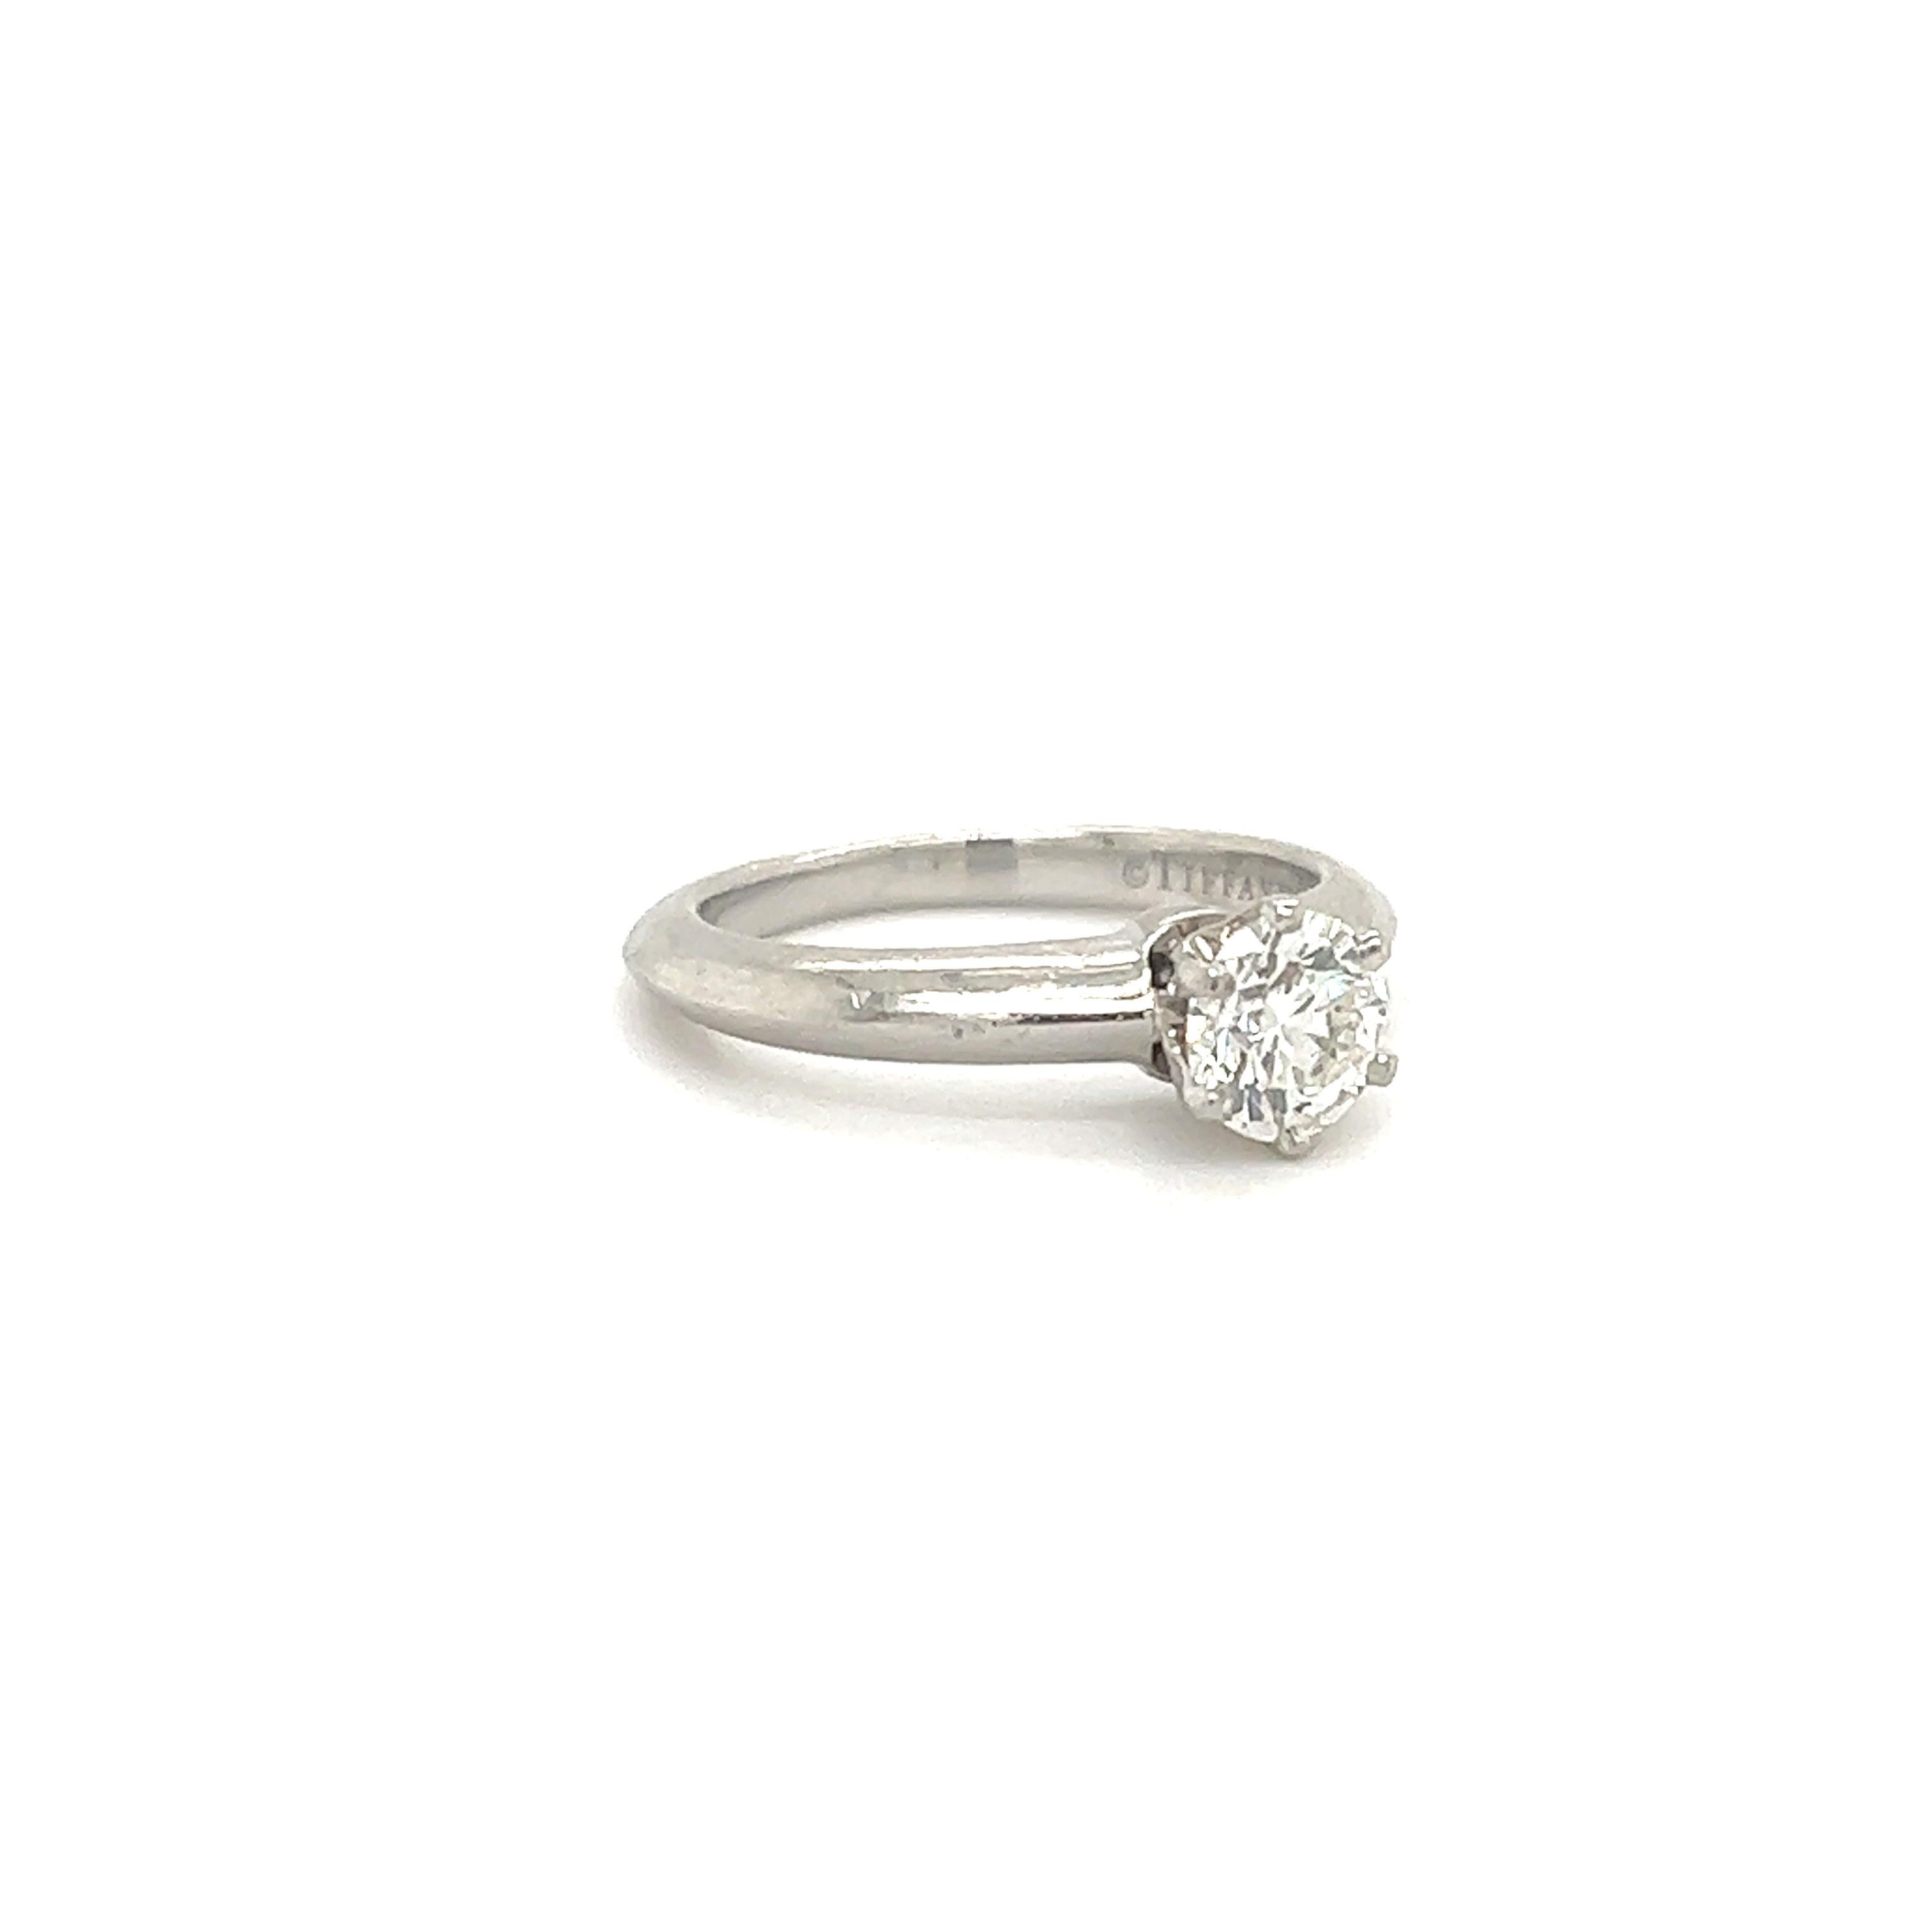 Gorgoues Verlobungsring, hergestellt vom berühmten Schmuckhaus Tiffany & Co. Dieser elegante Ring ist aus Platin gefertigt und als 